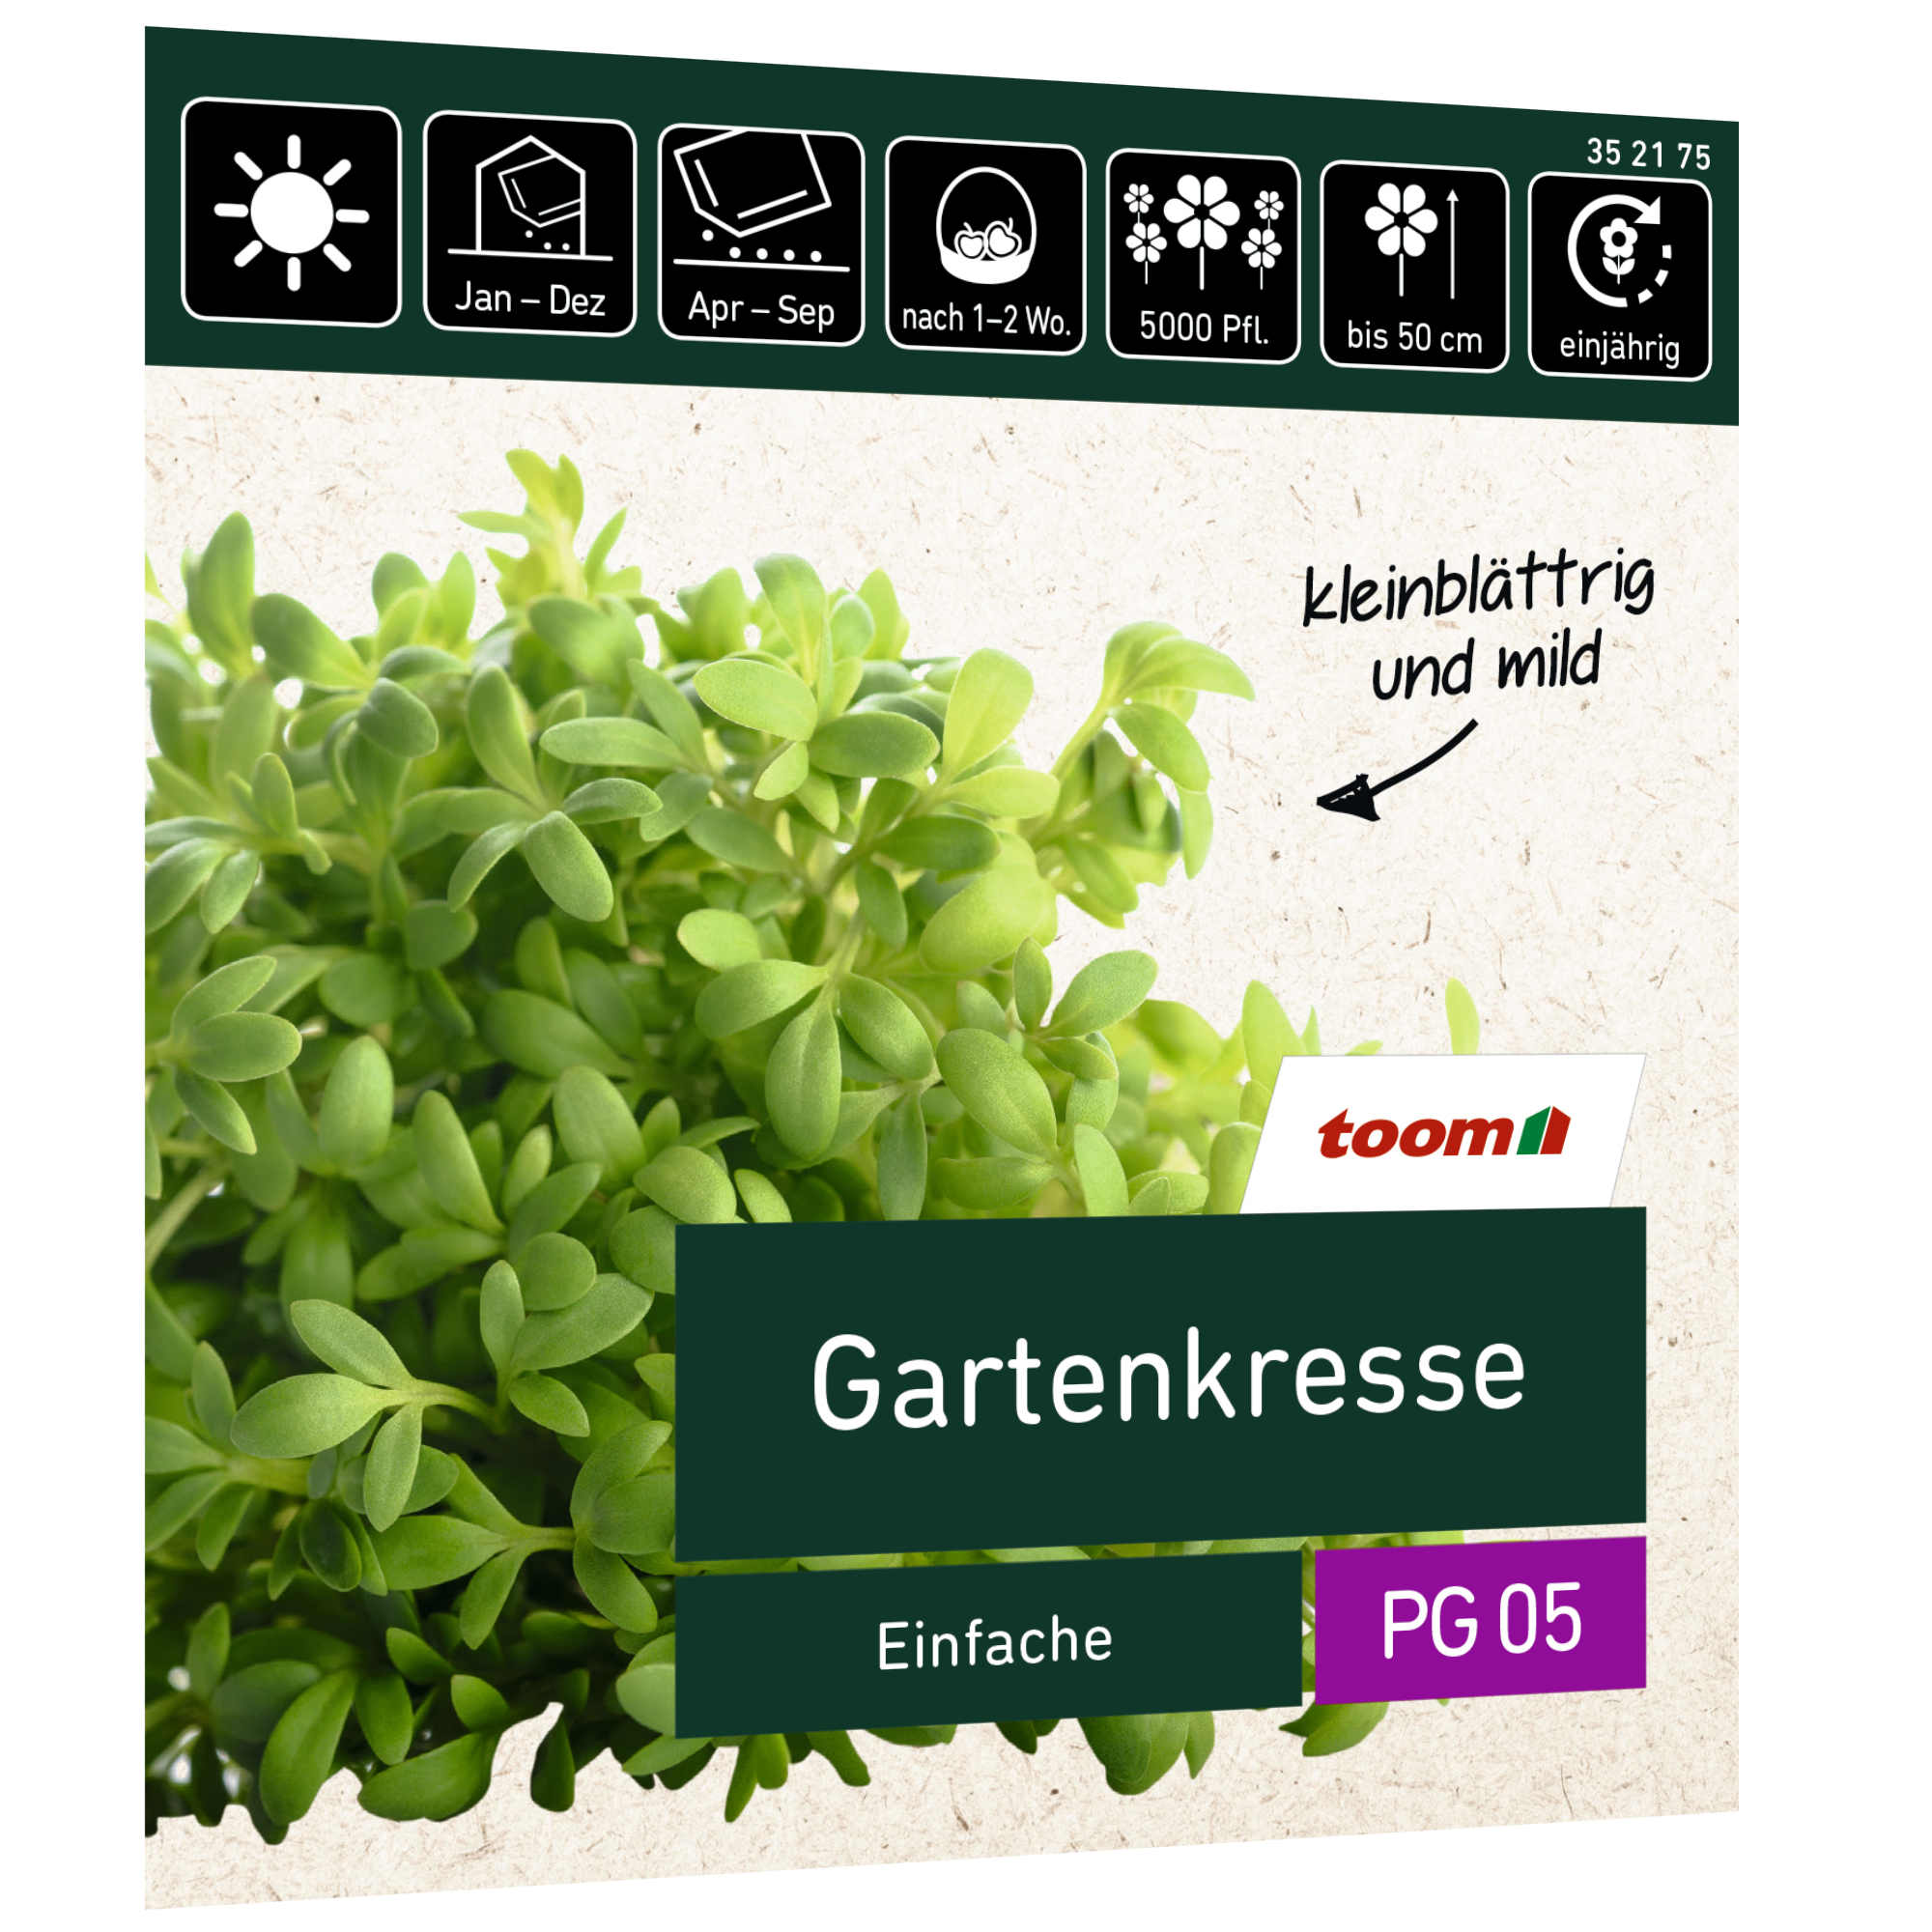 Gartenkresse 'Einfache Großpackung' + product picture